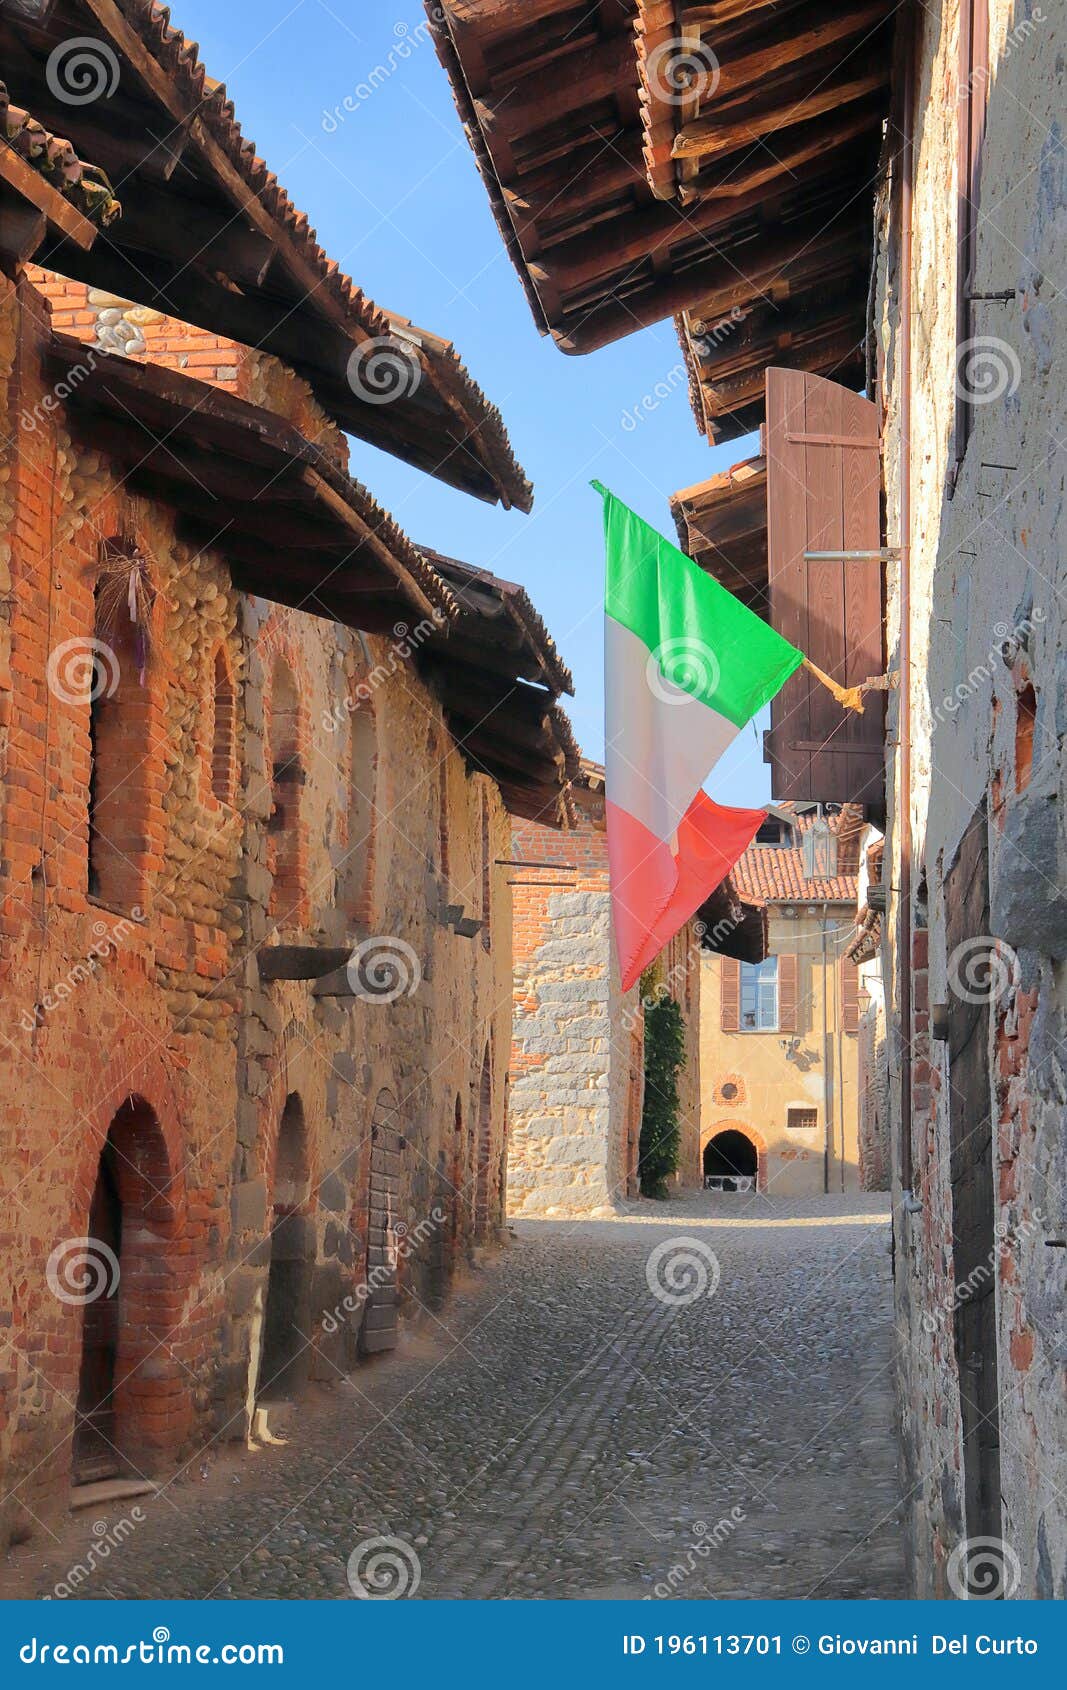 borgo medievale di ricetto di candelo in italia, medieval village of ricetto of candelo in italy